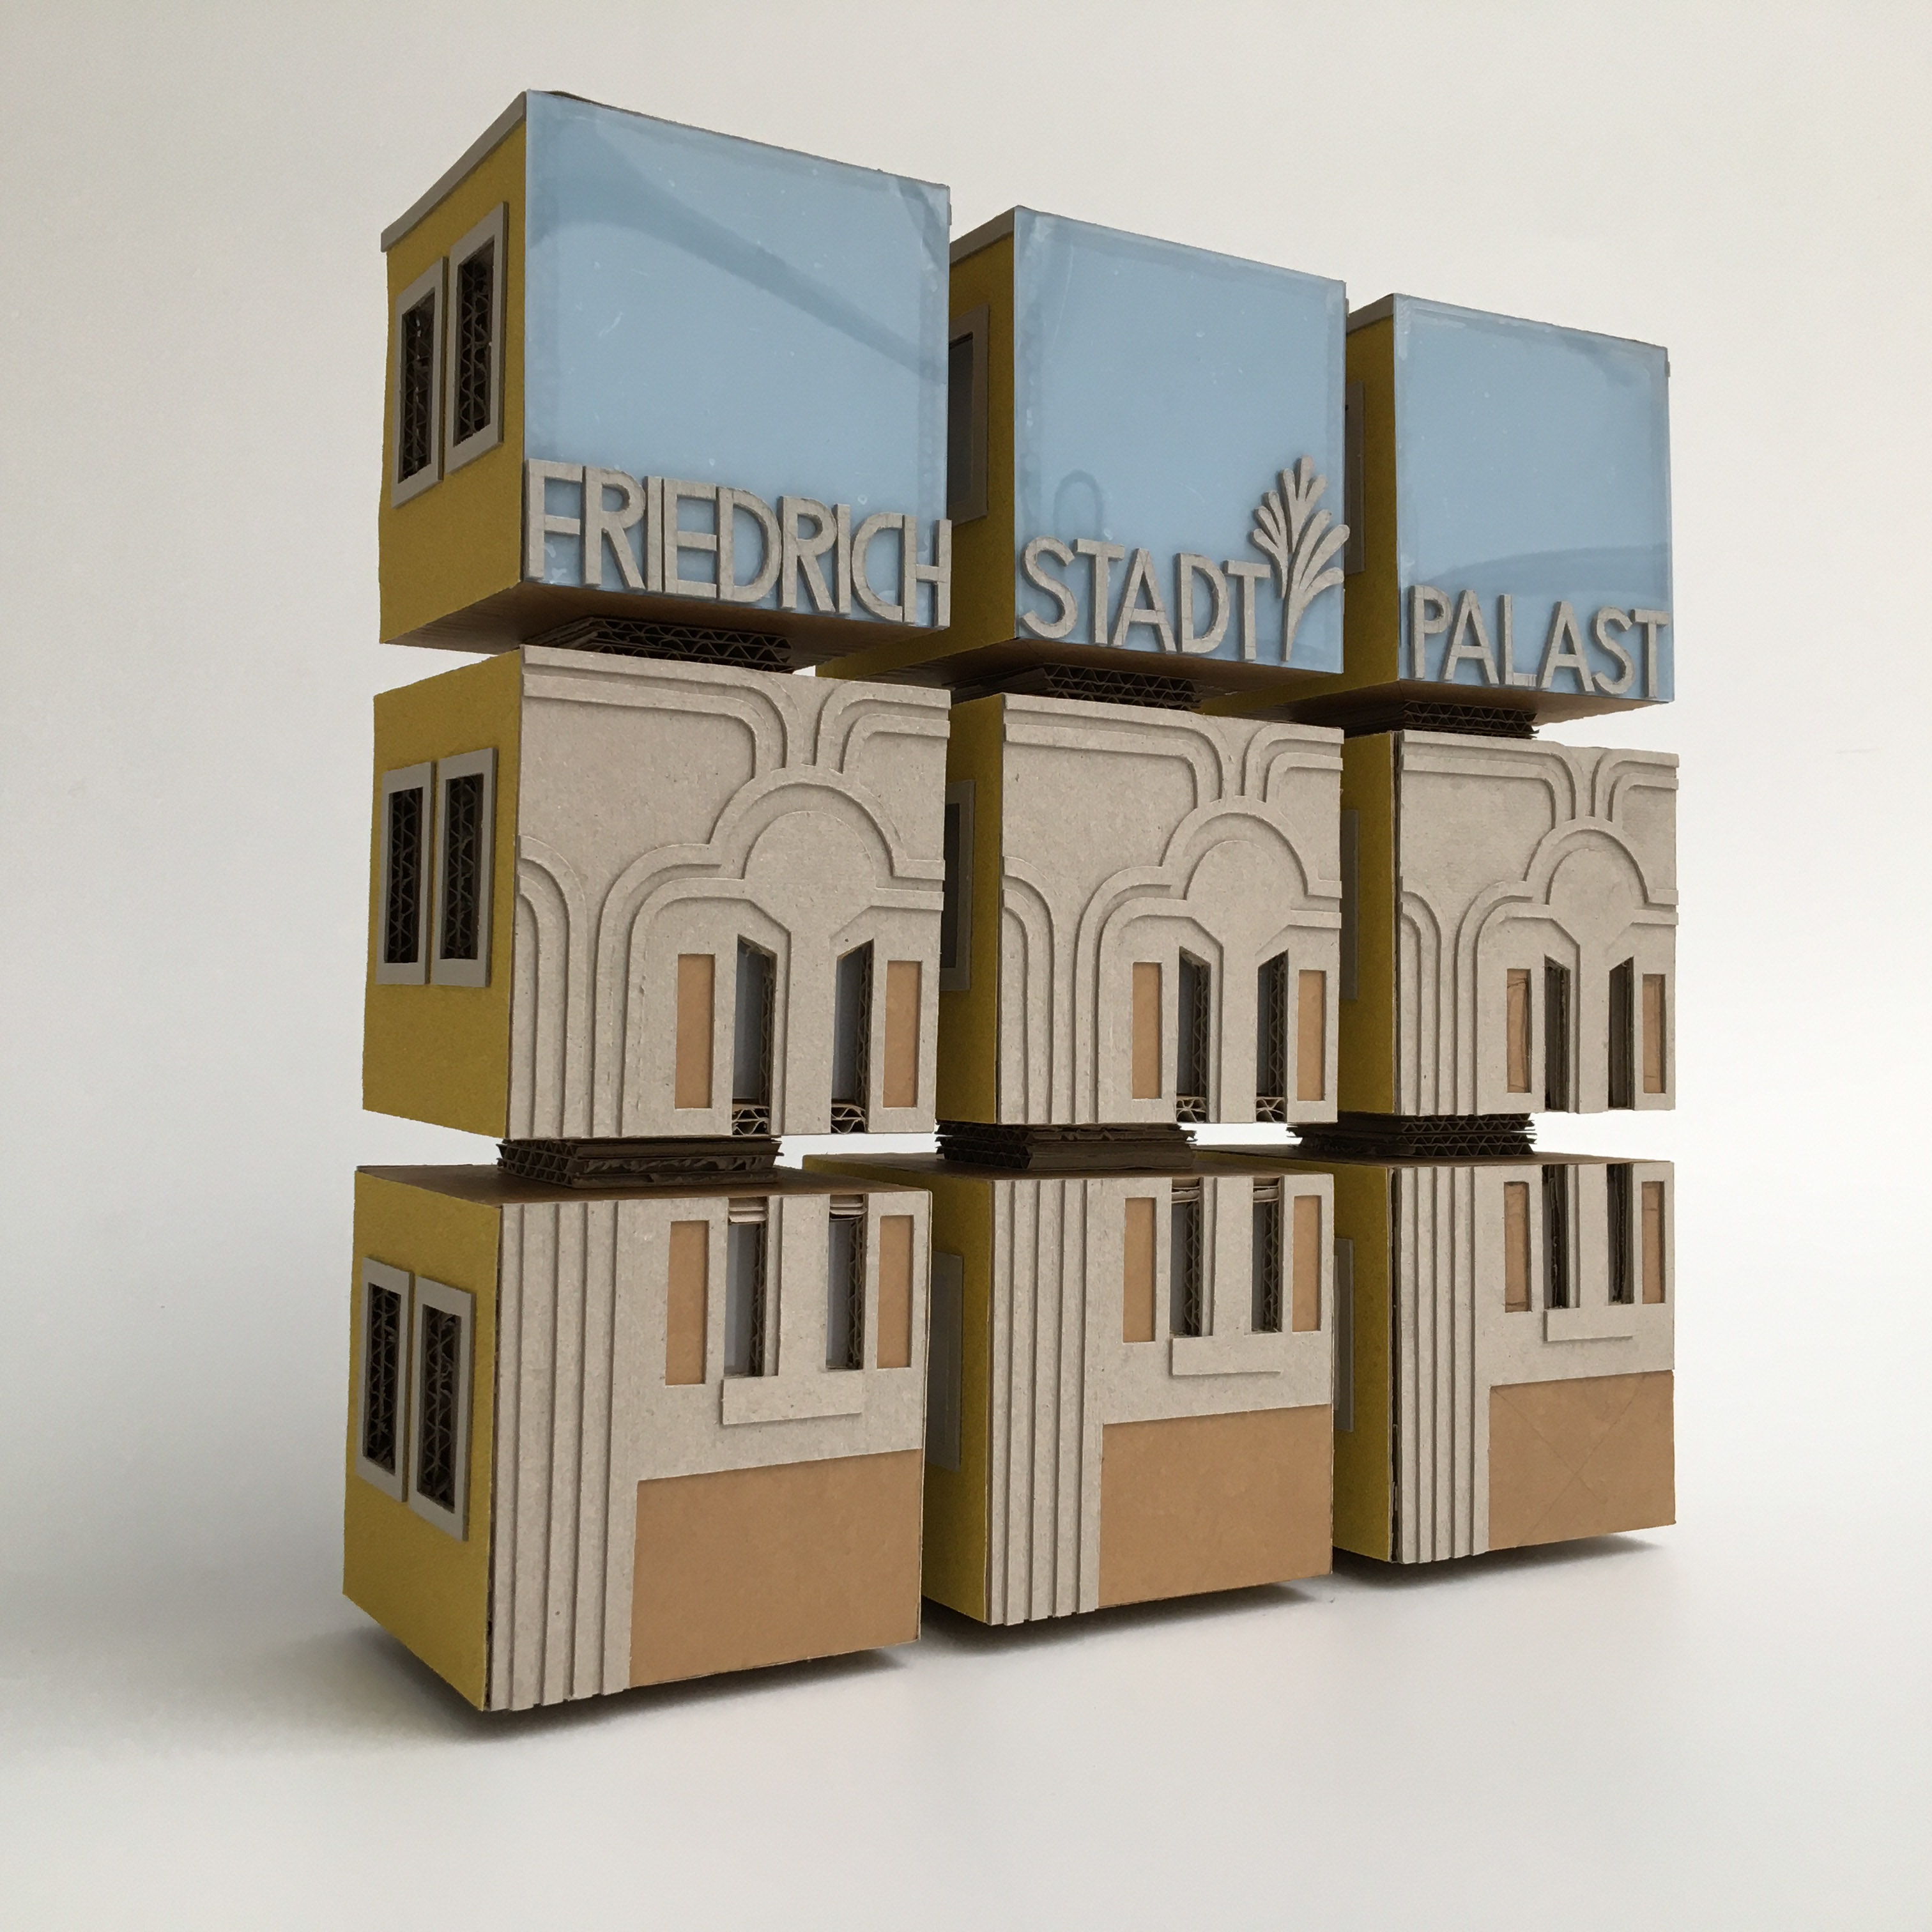 Tastobjekt aus 9 Papp-Würfeln, die einen Quader bilden. Die Fassade eines Hauses und die Worte "Friedrichstadt-Palast" sind taktil hervorgehoben.